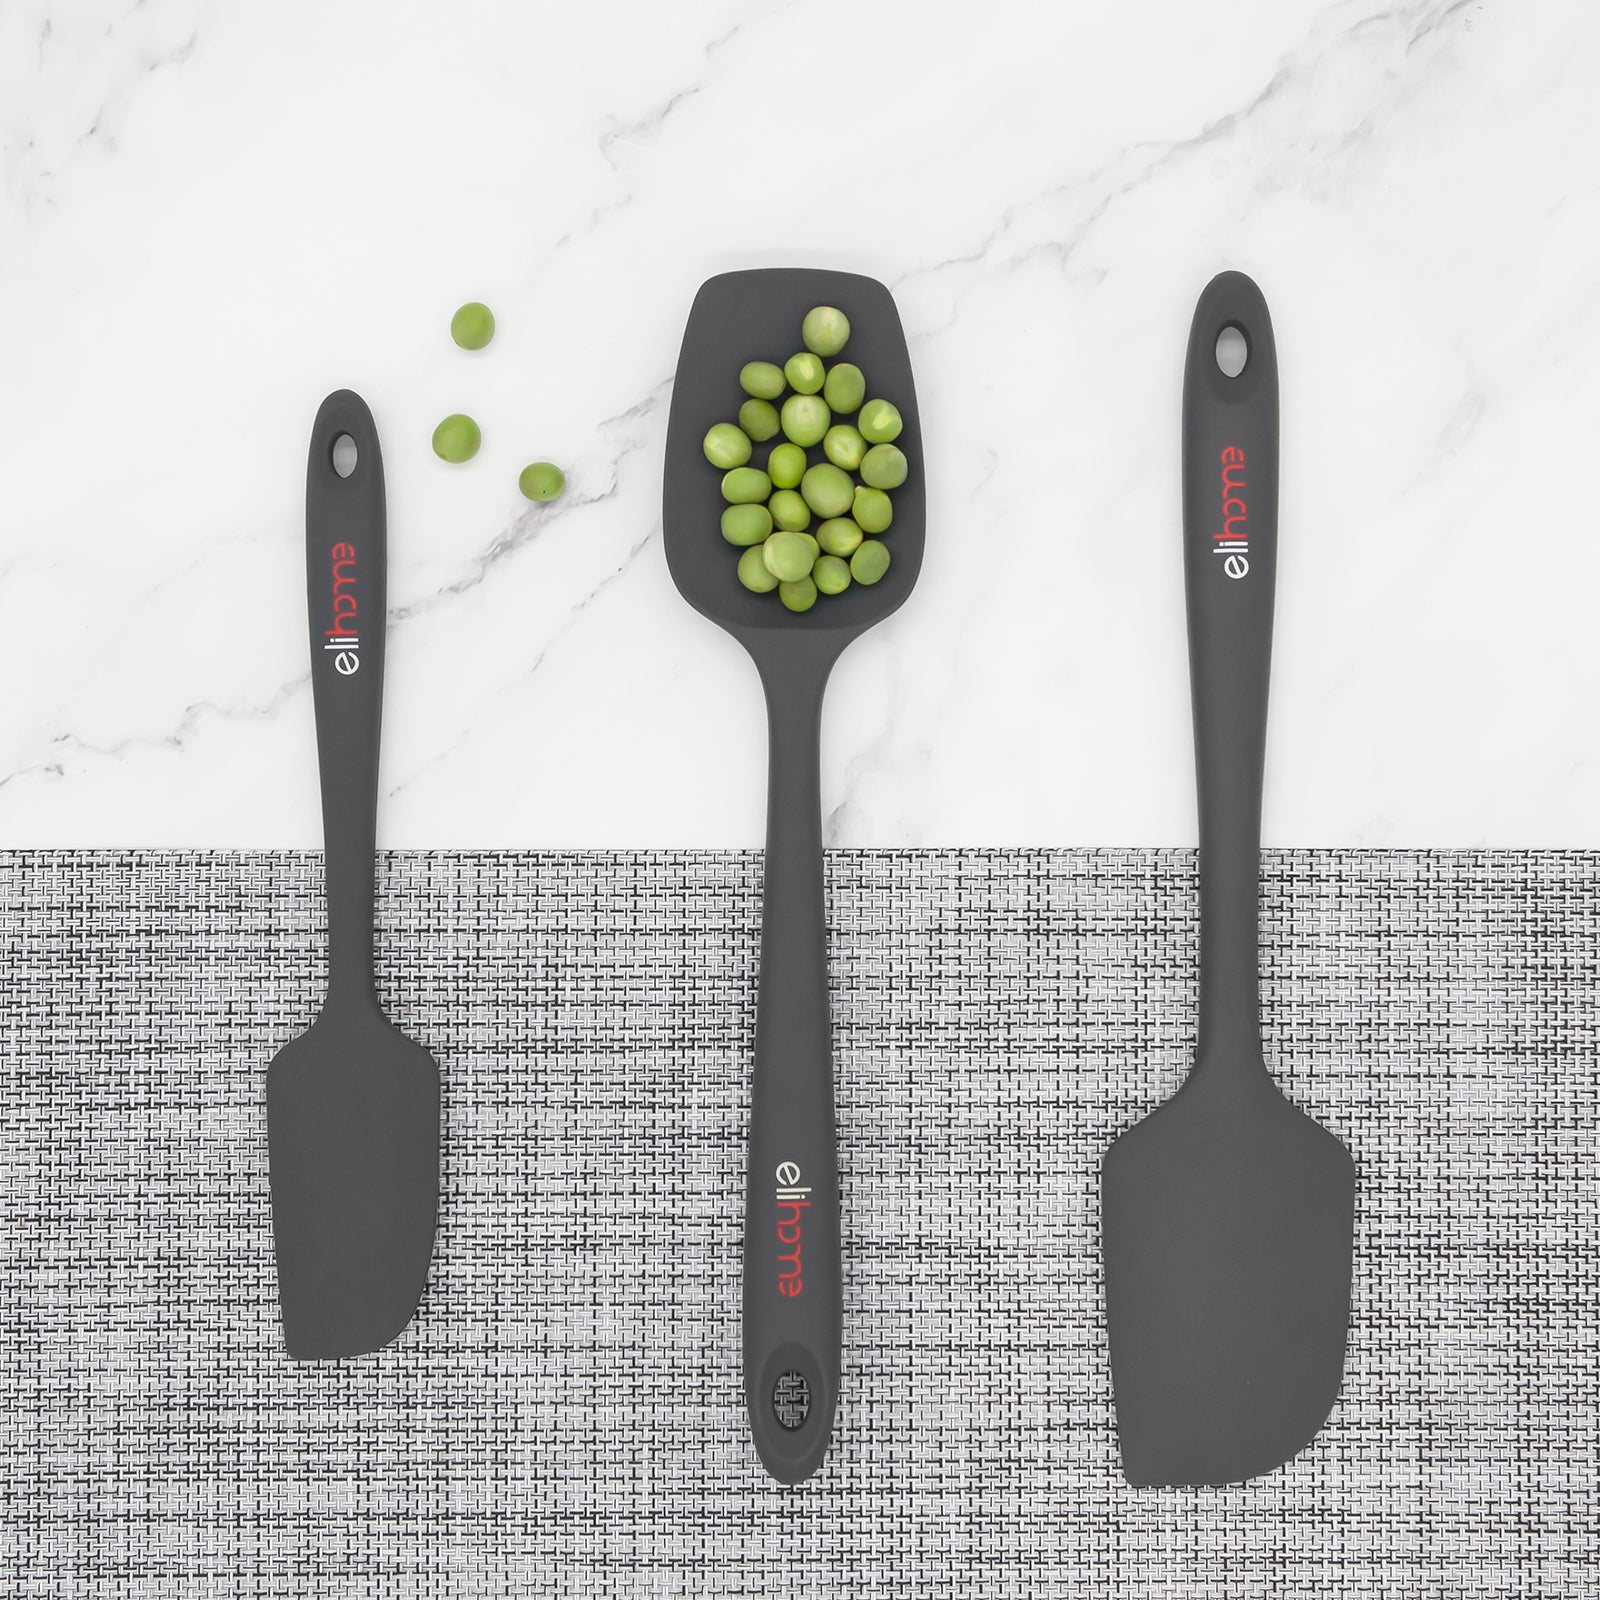 di Oro Living di oro silicone spatula set - rubber kitchen spatulas for  baking, cooking, & mixing 